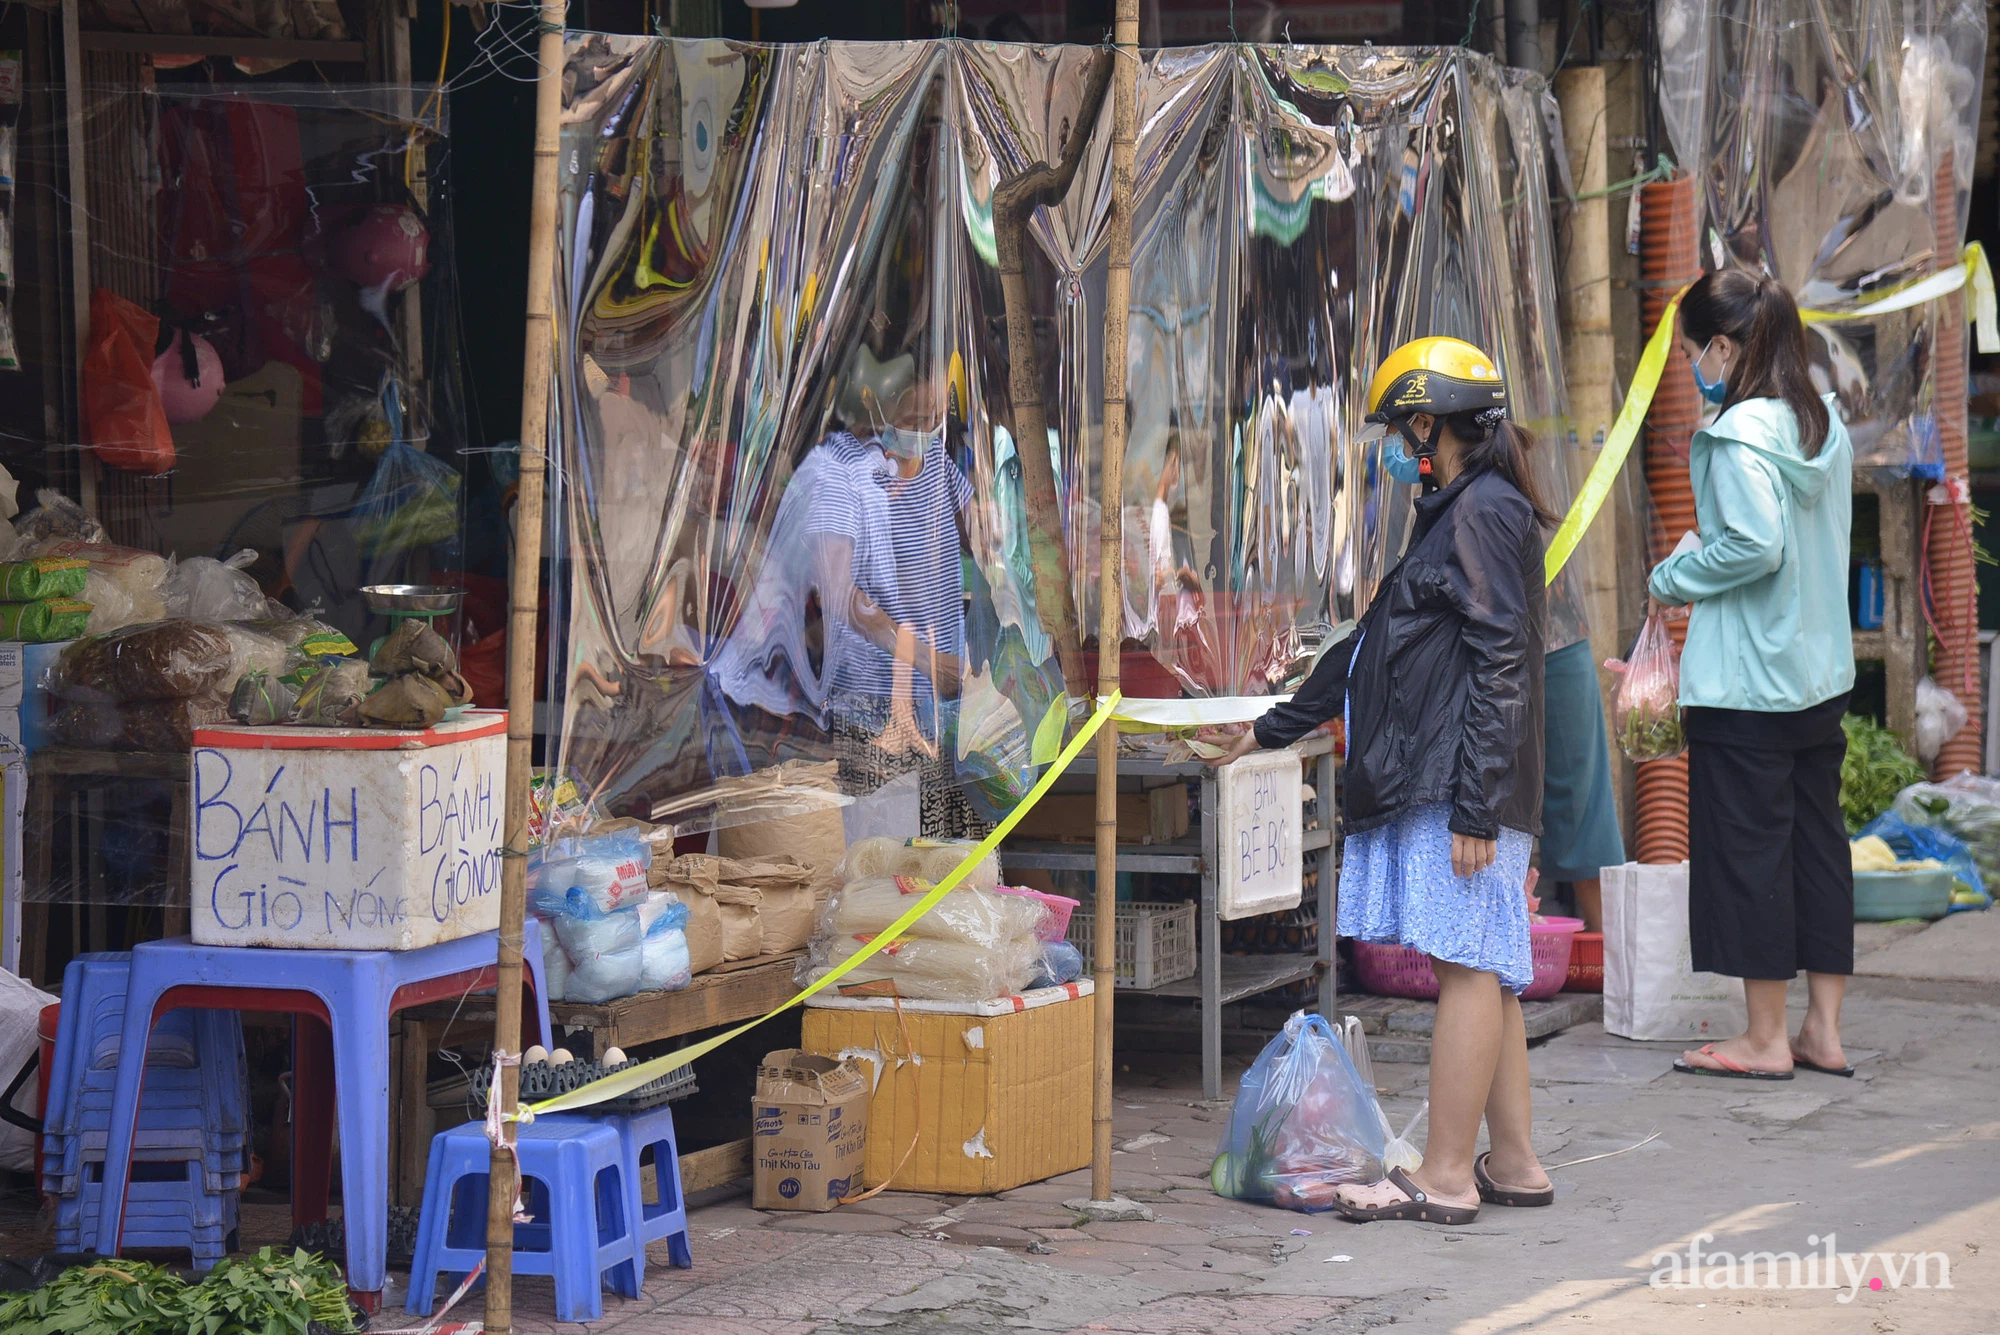 Ấn tượng với khu chợ dân sinh đầu tiên ở Hà Nội quây tấm nilon phòng dịch COVID-19, tiểu thương chia ca đứng bán theo ngày chẵn, lẻ - Ảnh 14.